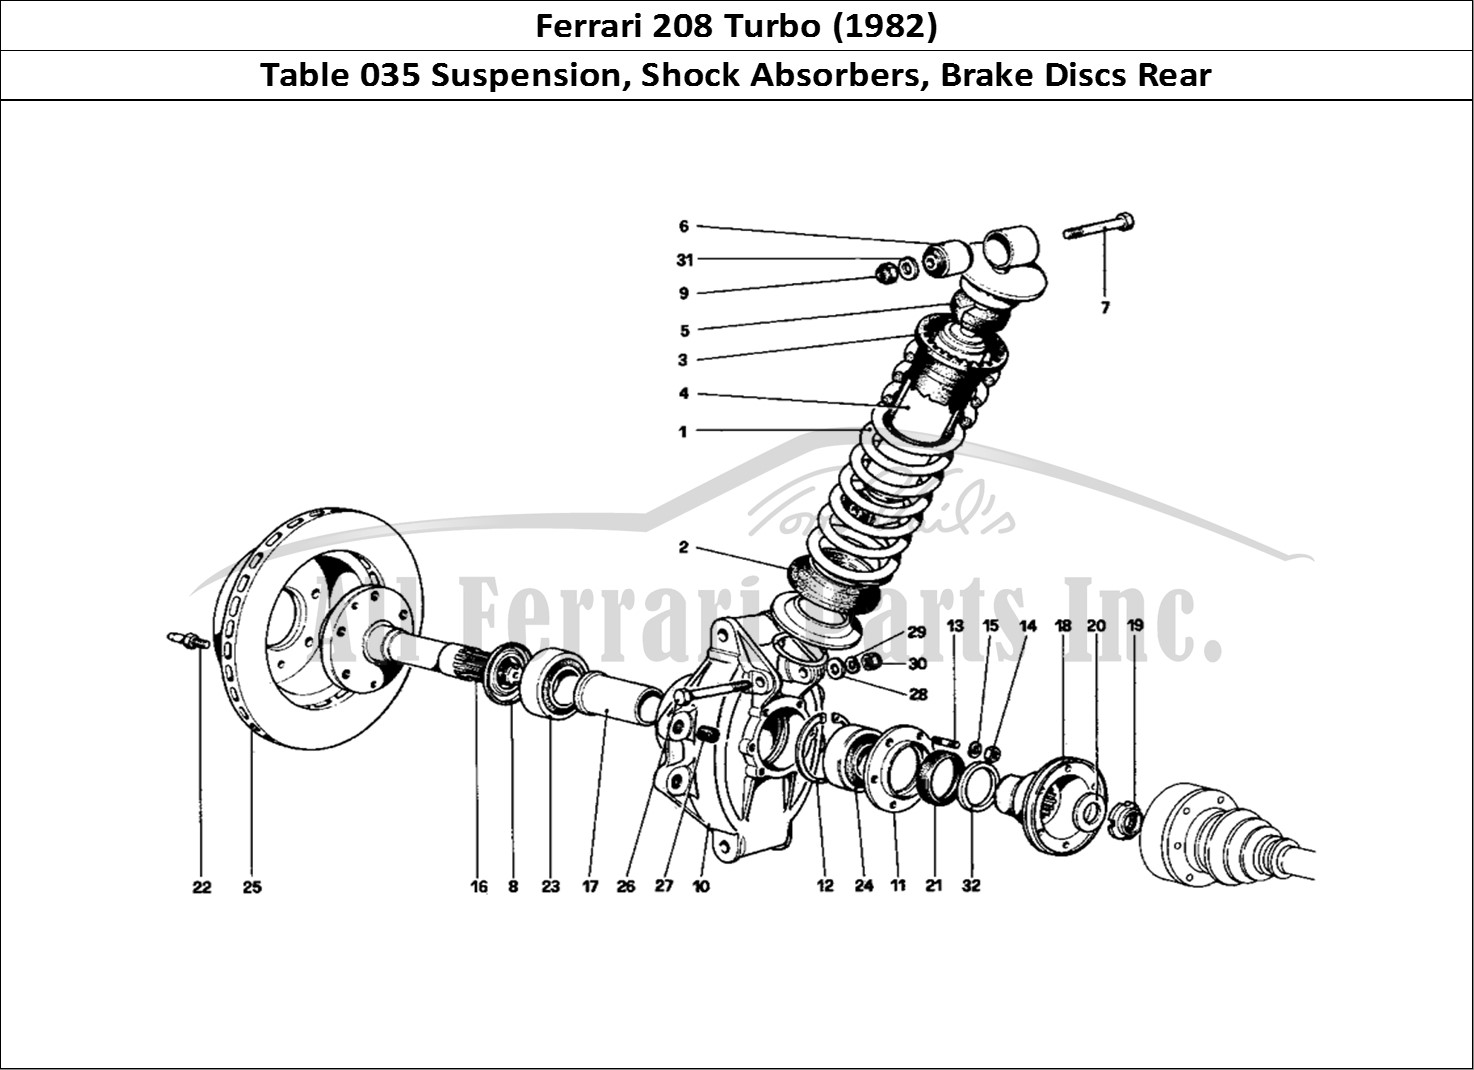 Ferrari Parts Ferrari 208 Turbo (1982) Page 035 Rear Suspension - Shock A